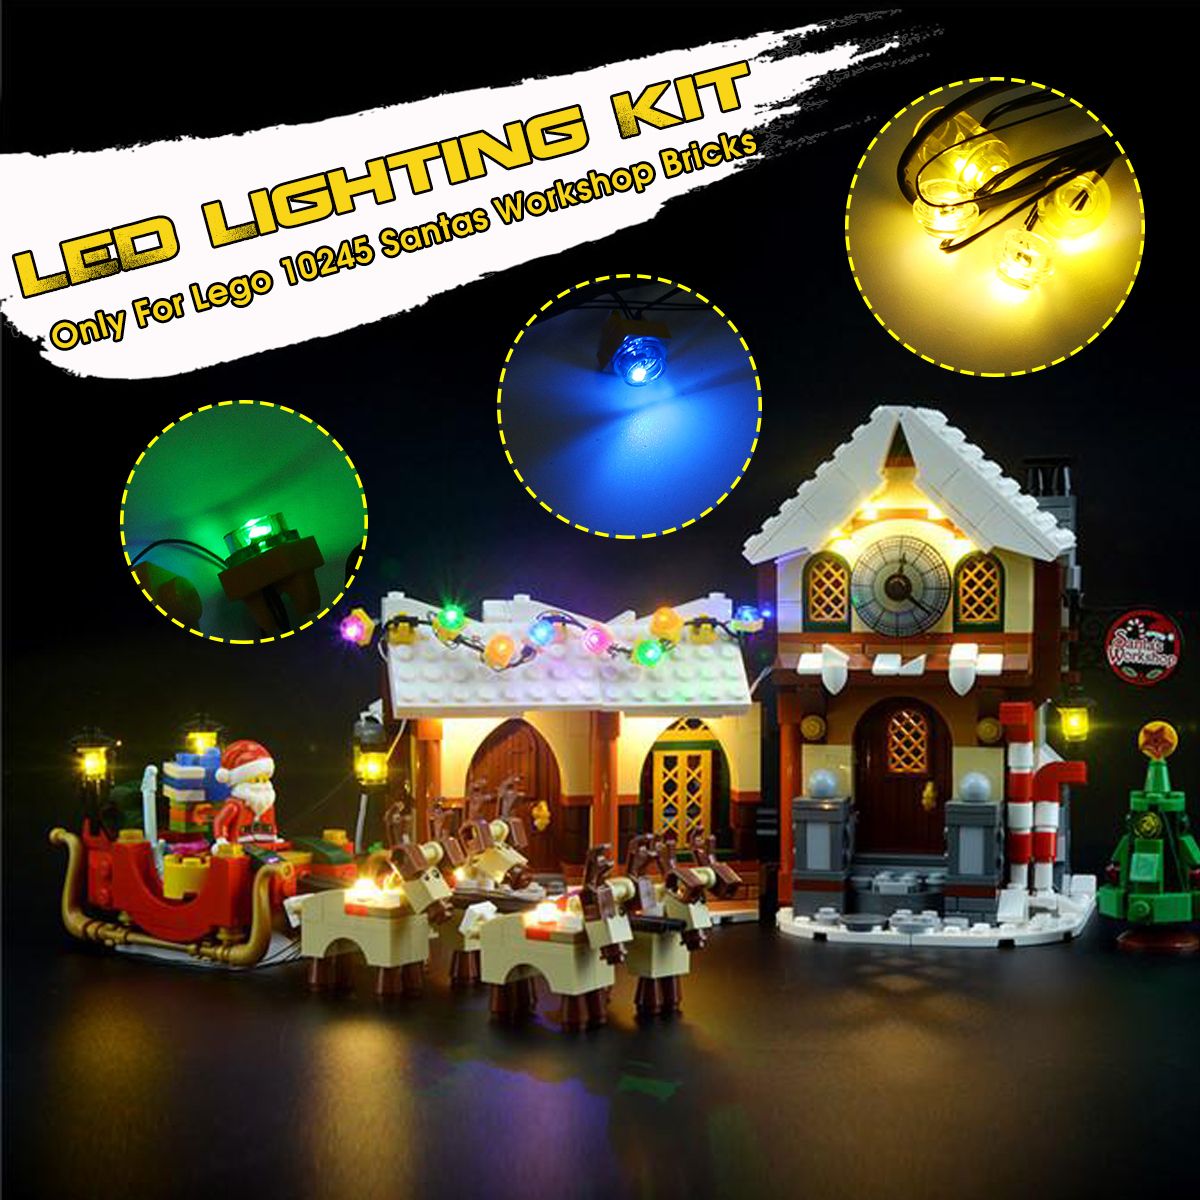 Led-Light-Kit-Only-For-Lego-10245-Santas-Workshop-Castle-Bricks-DIY-Tool-Gift-Decorations-1600496